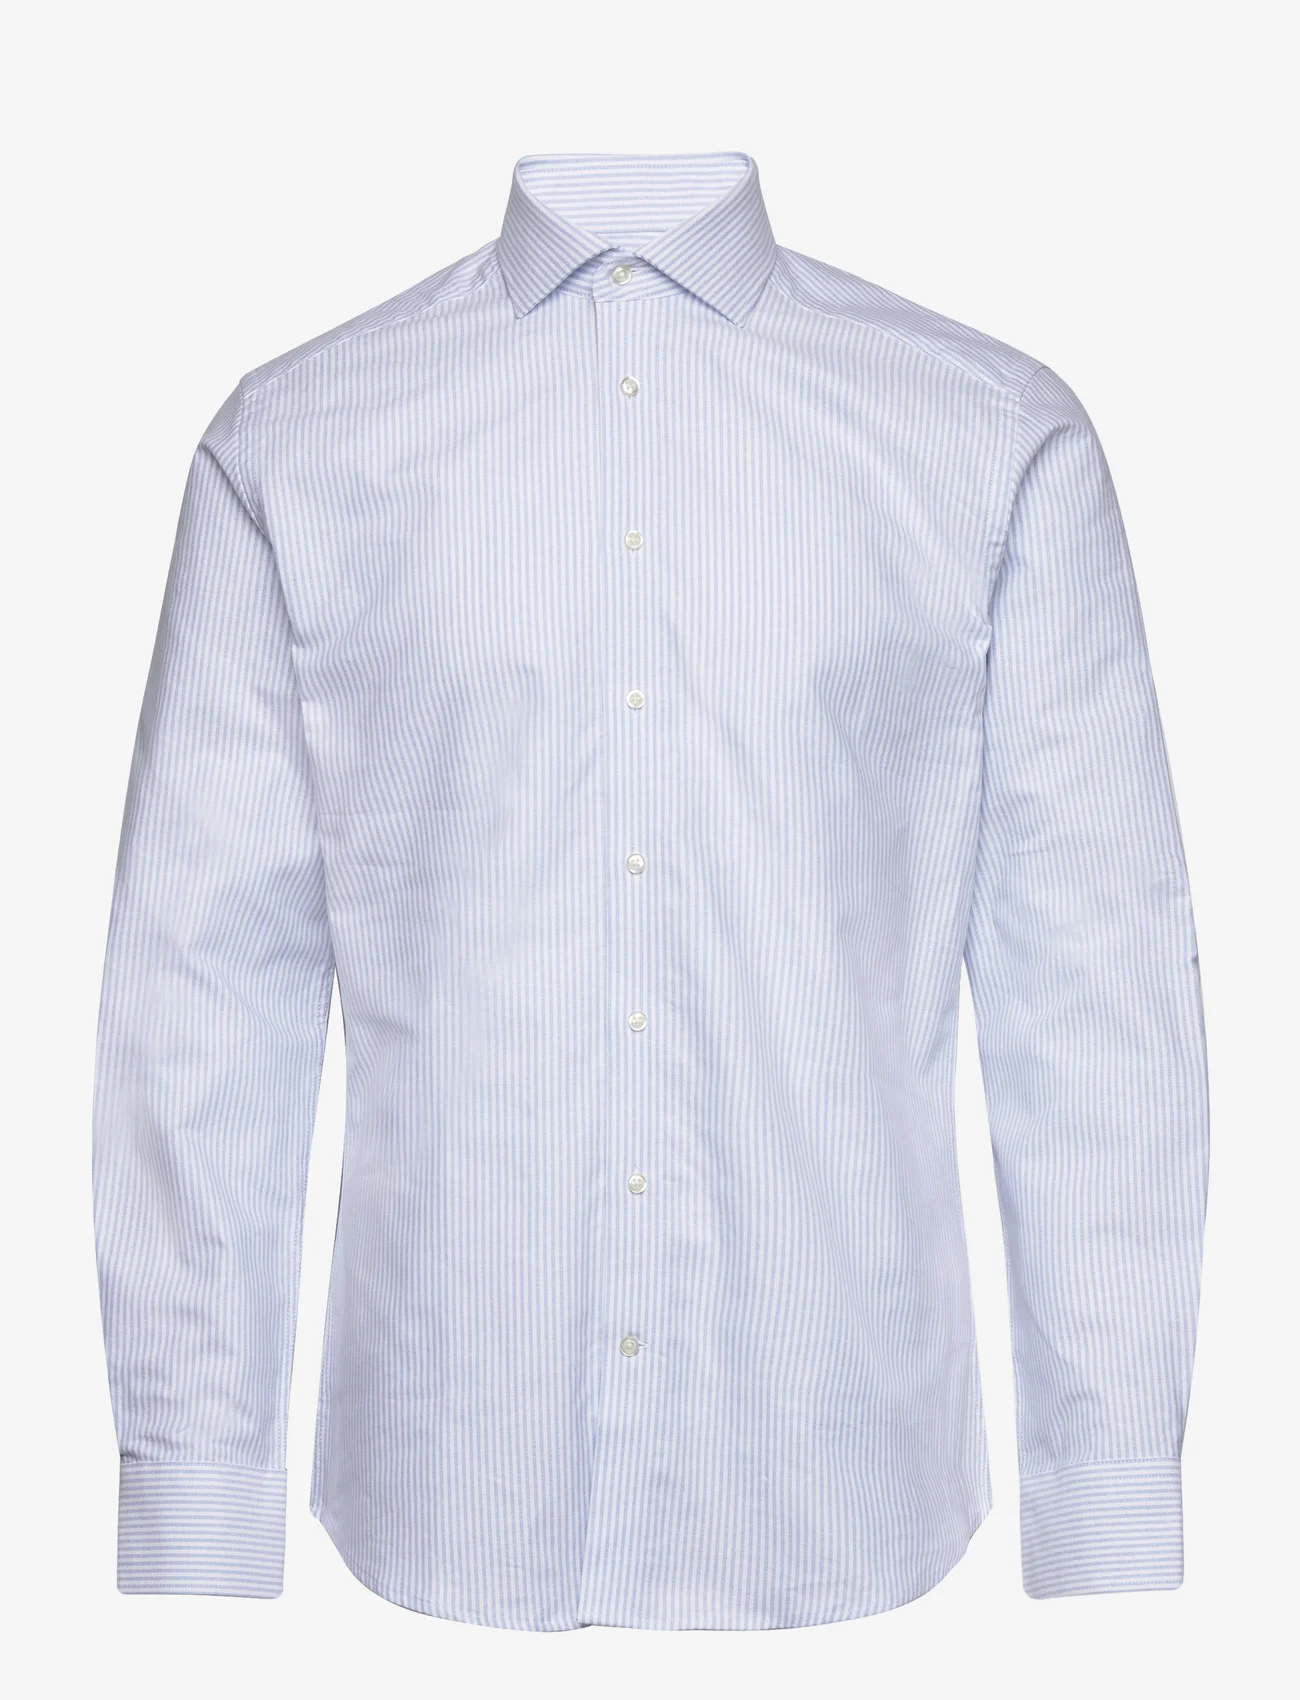 Bruun & Stengade - BS Thompson Slim Fit Shirt - basic skjortor - light blue/white - 0